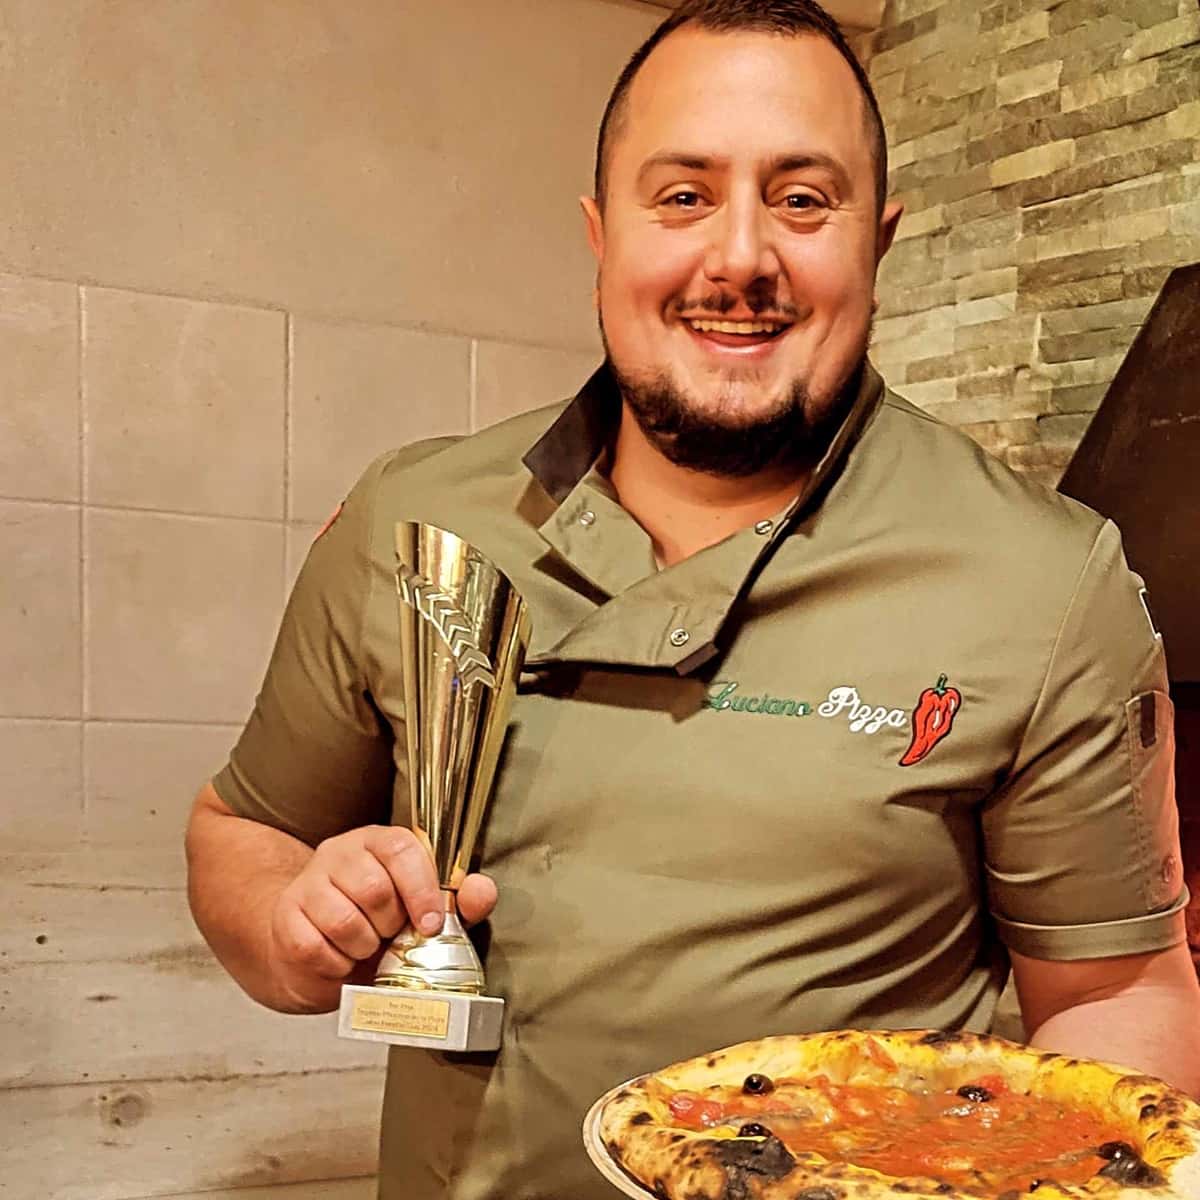 Christian Lopez de Luciano Pizza